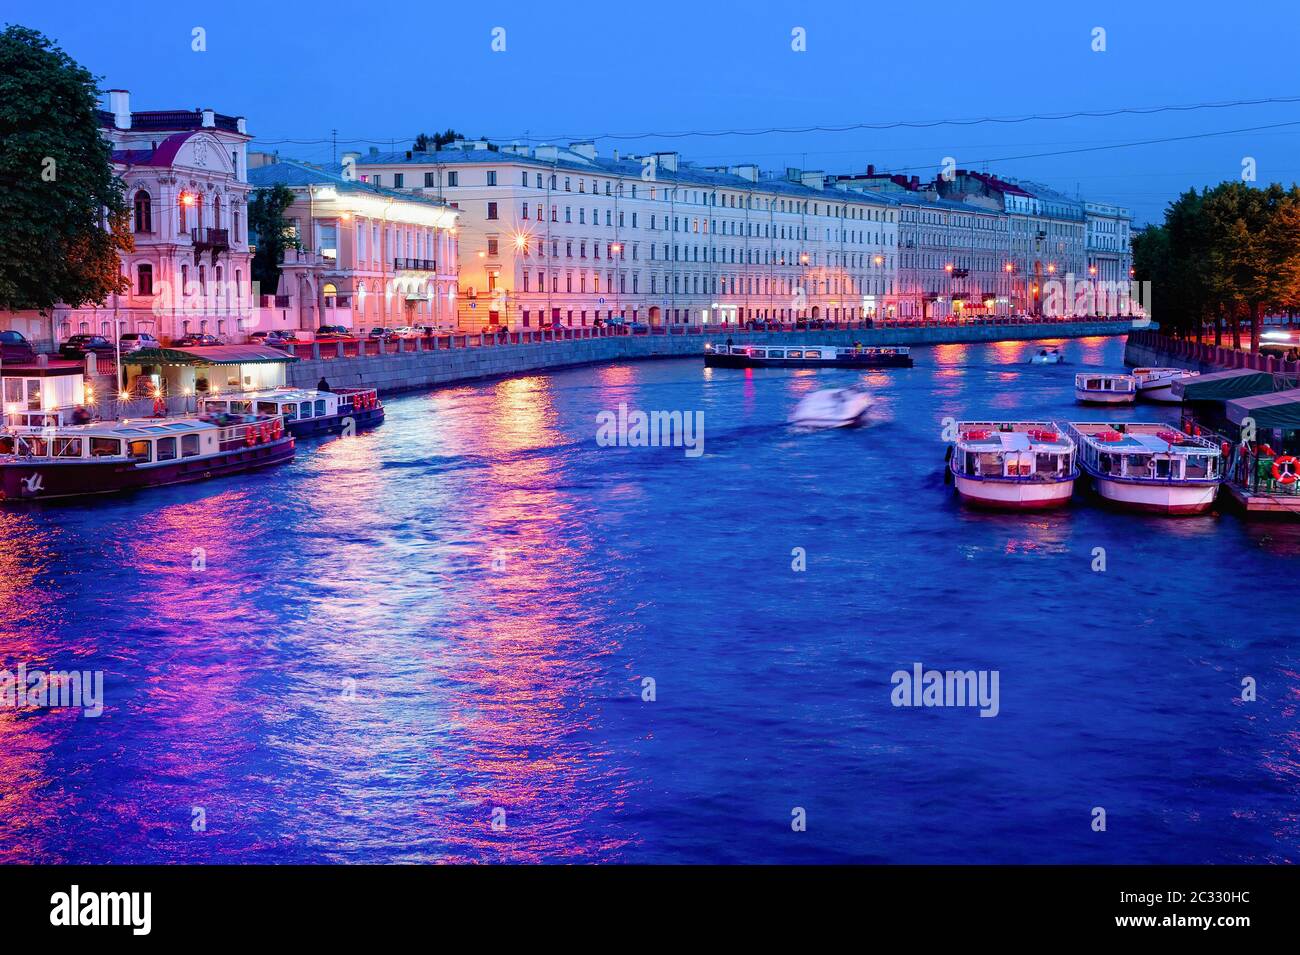 Canal de nuit, bateaux, Saint-Pétersbourg Banque D'Images